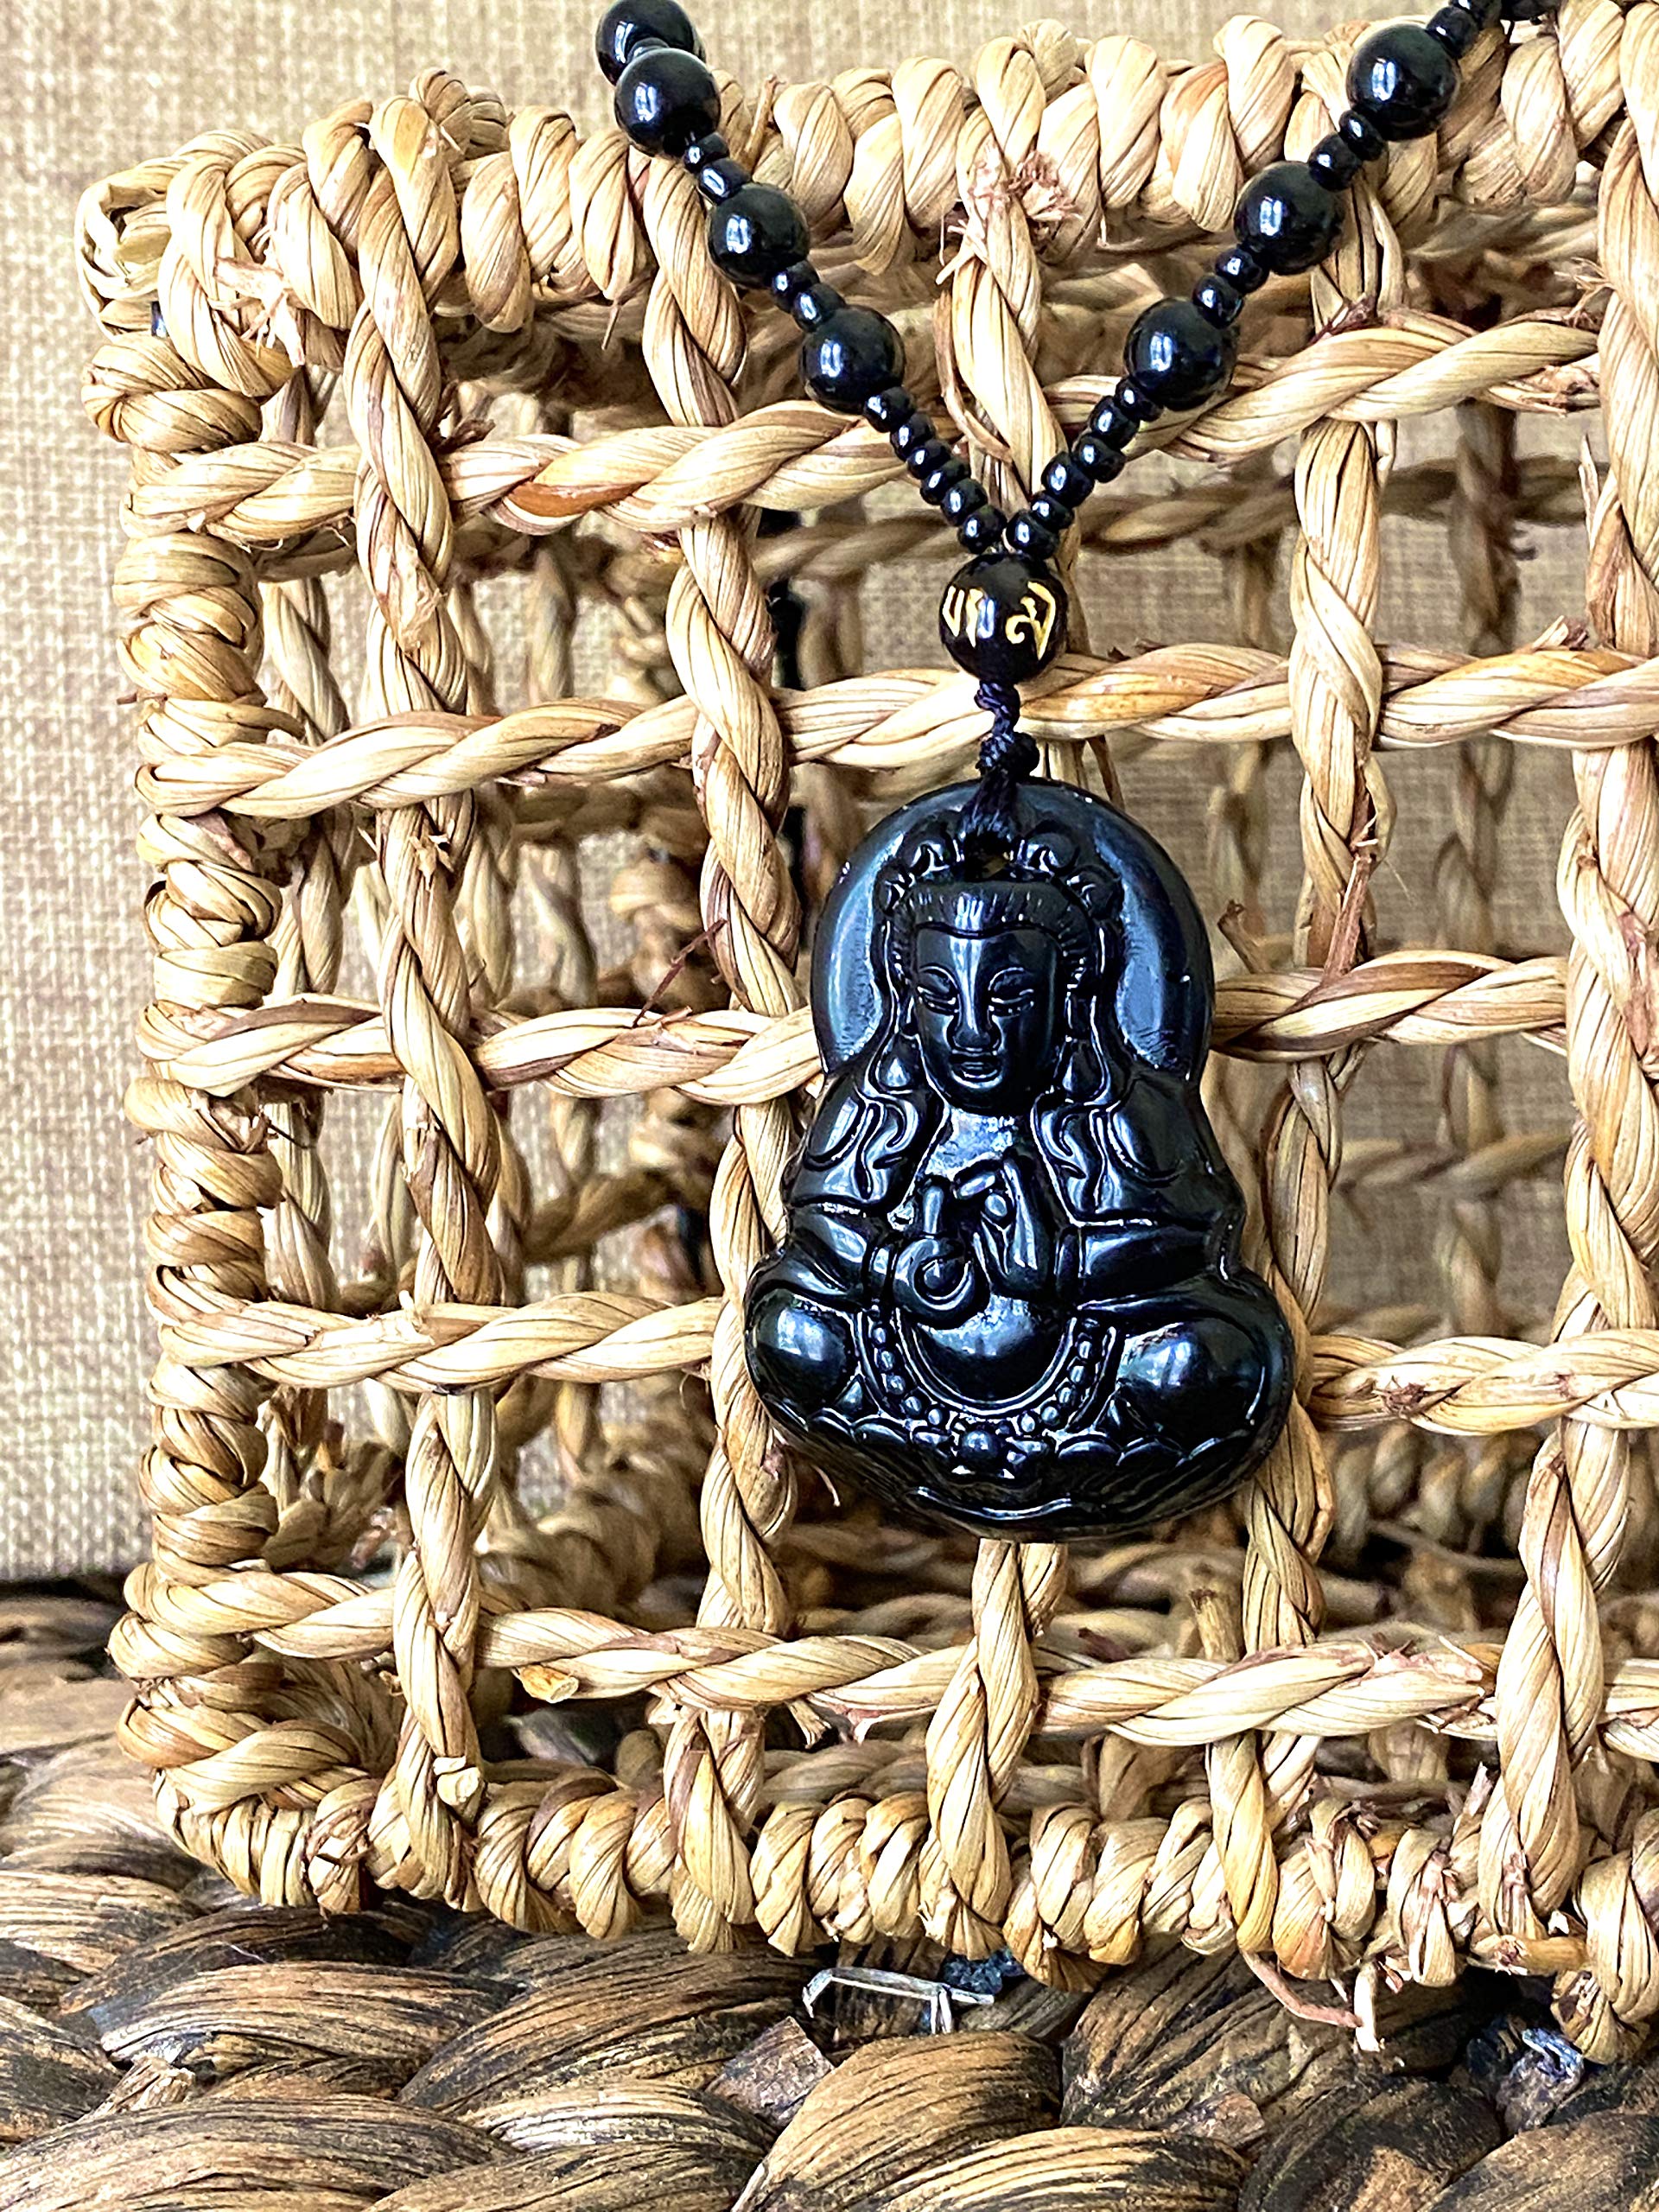 Real Laughing Buddha Black Jade Stabilized Turquoise Bodhisattva Amulet Talisman Pendant 24